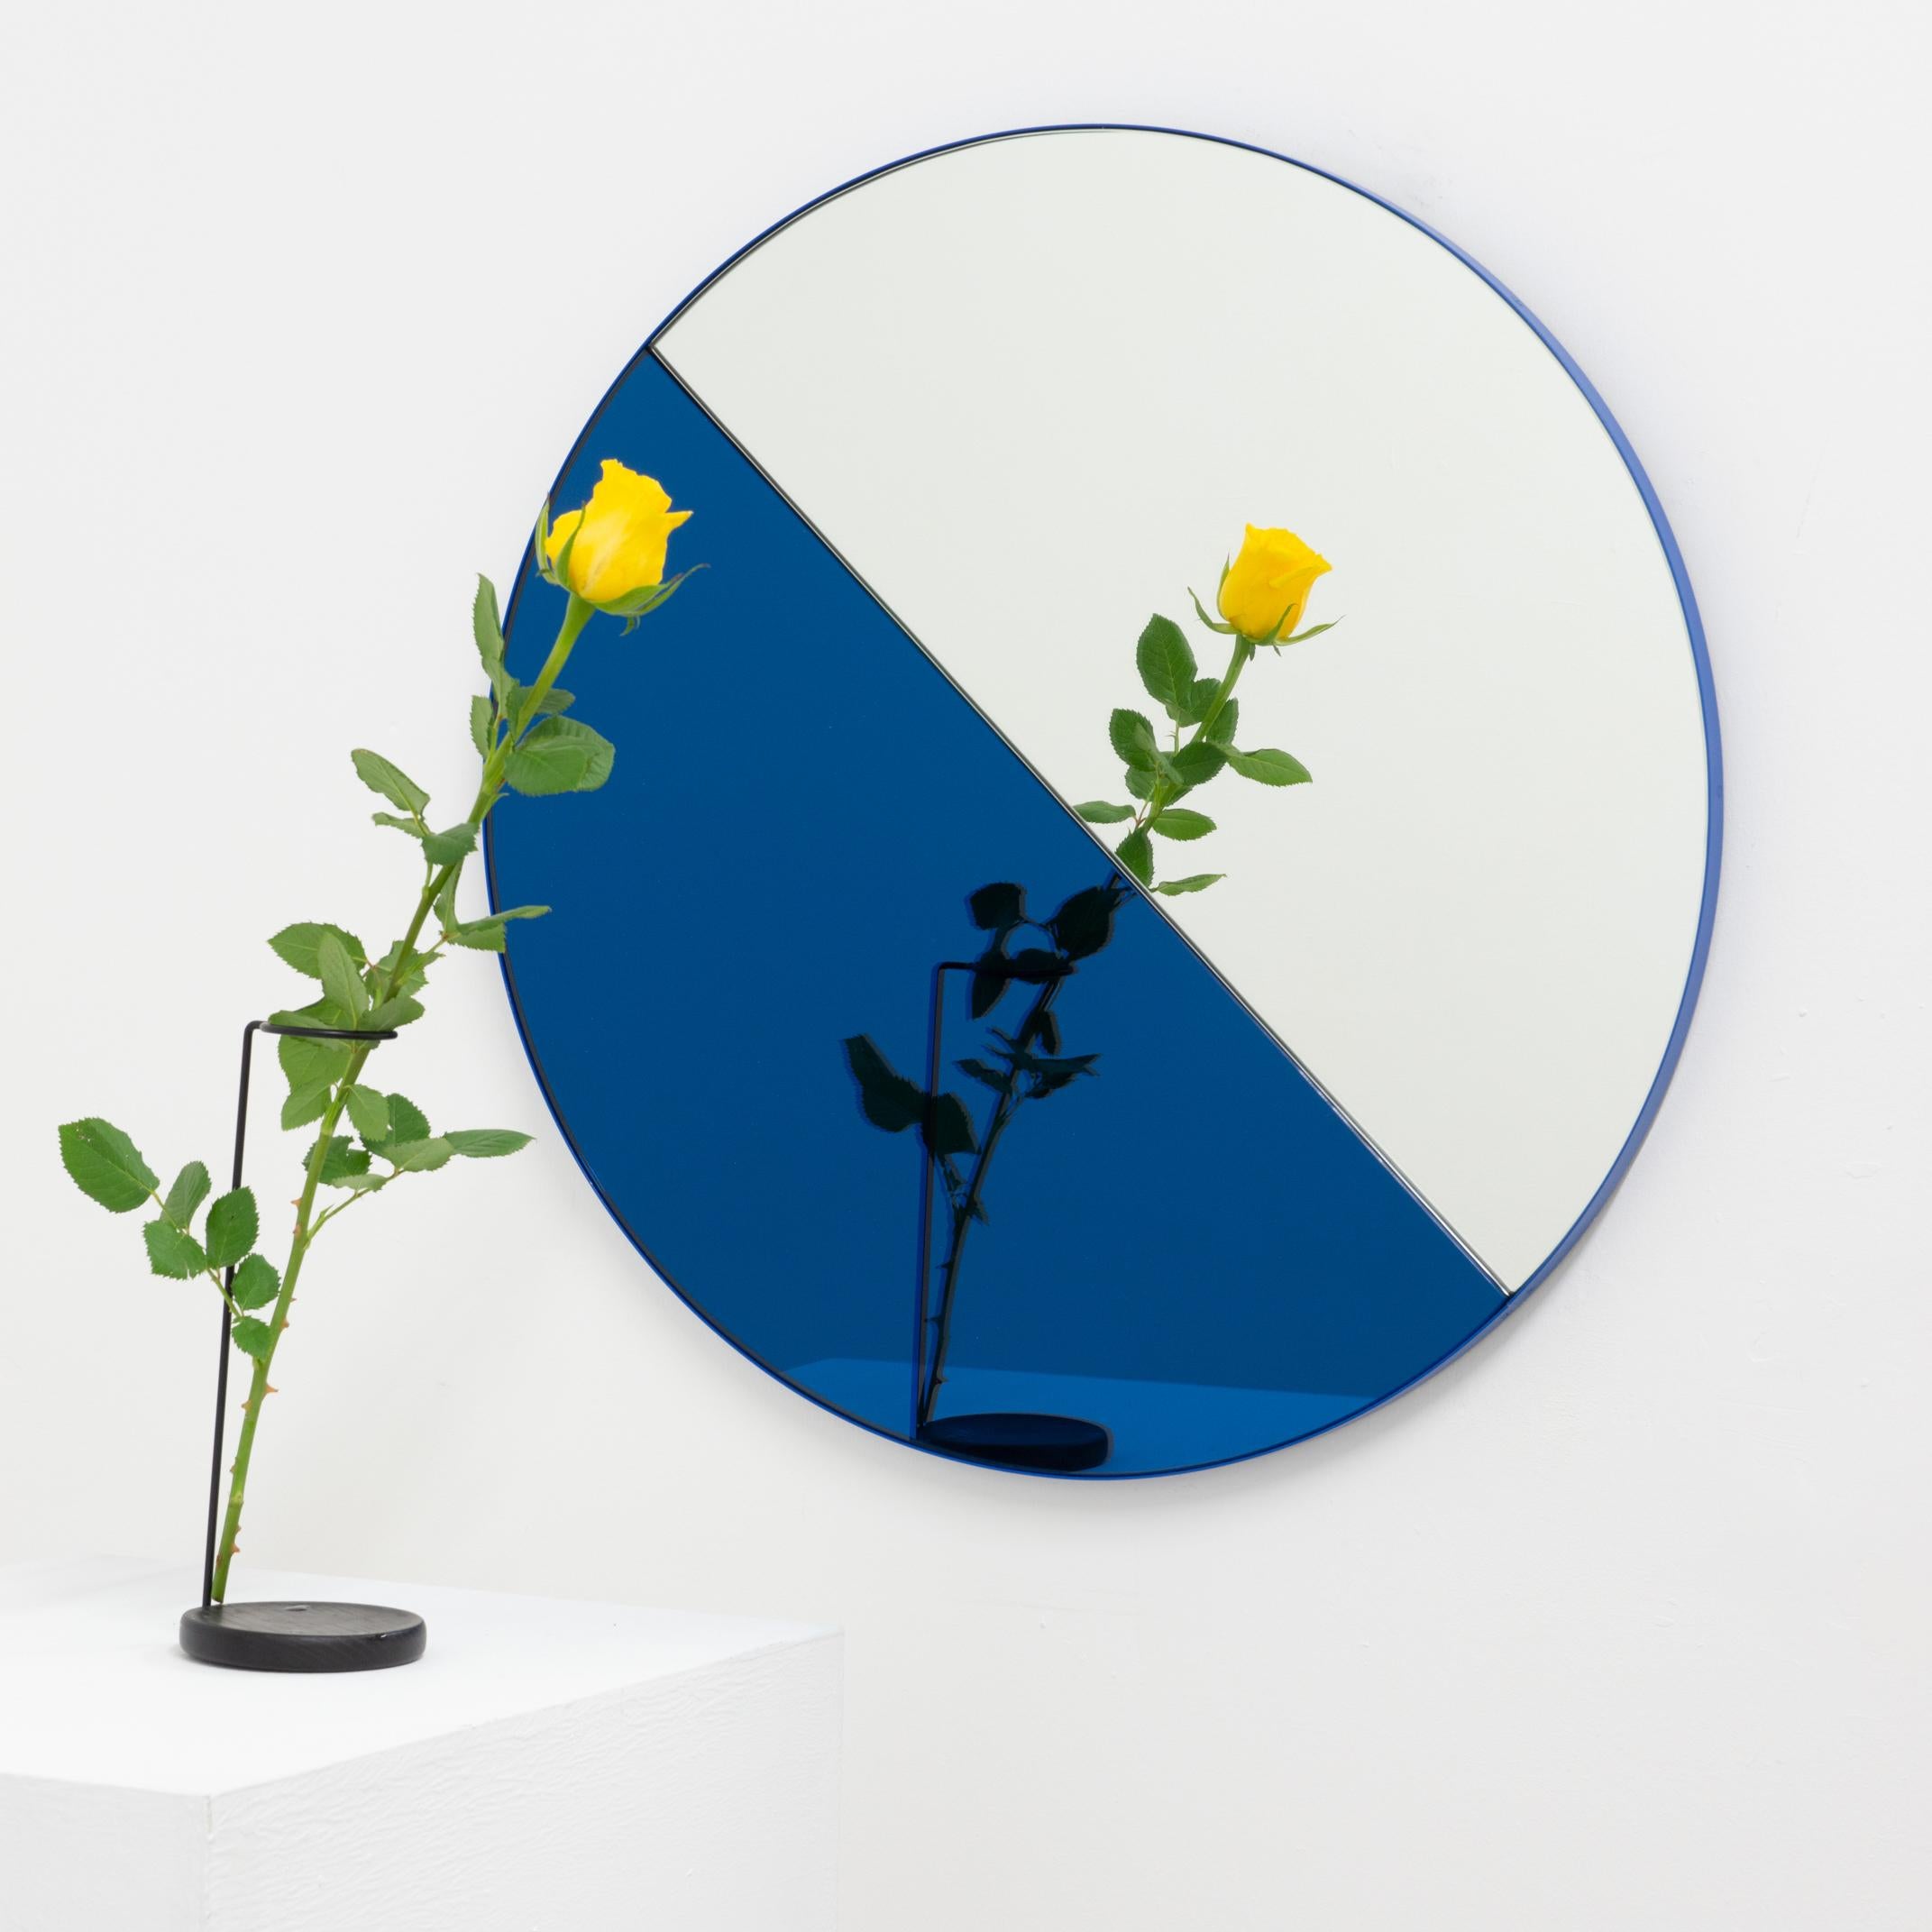 Miroir contemporain mixte bleu et argenté teinté Dualis Orbis avec un cadre bleu. Conçu et fabriqué à la main à Londres, au Royaume-Uni.

Tous les miroirs sont équipés d'un ingénieux système de tasseaux à la française (lattes fendues) qui leur